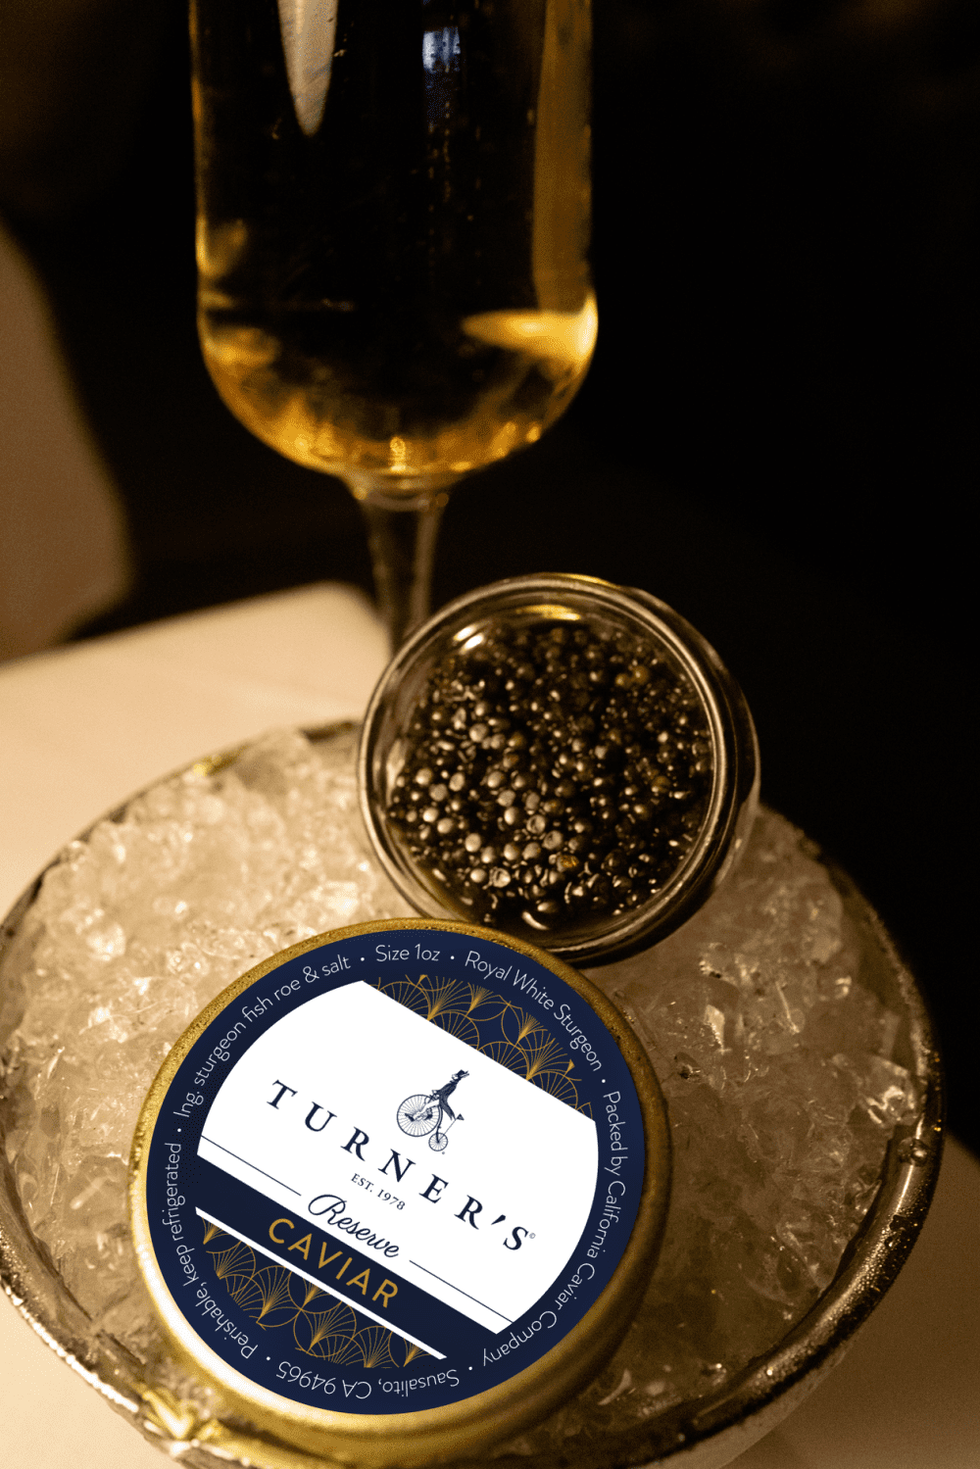 Turner's caviar